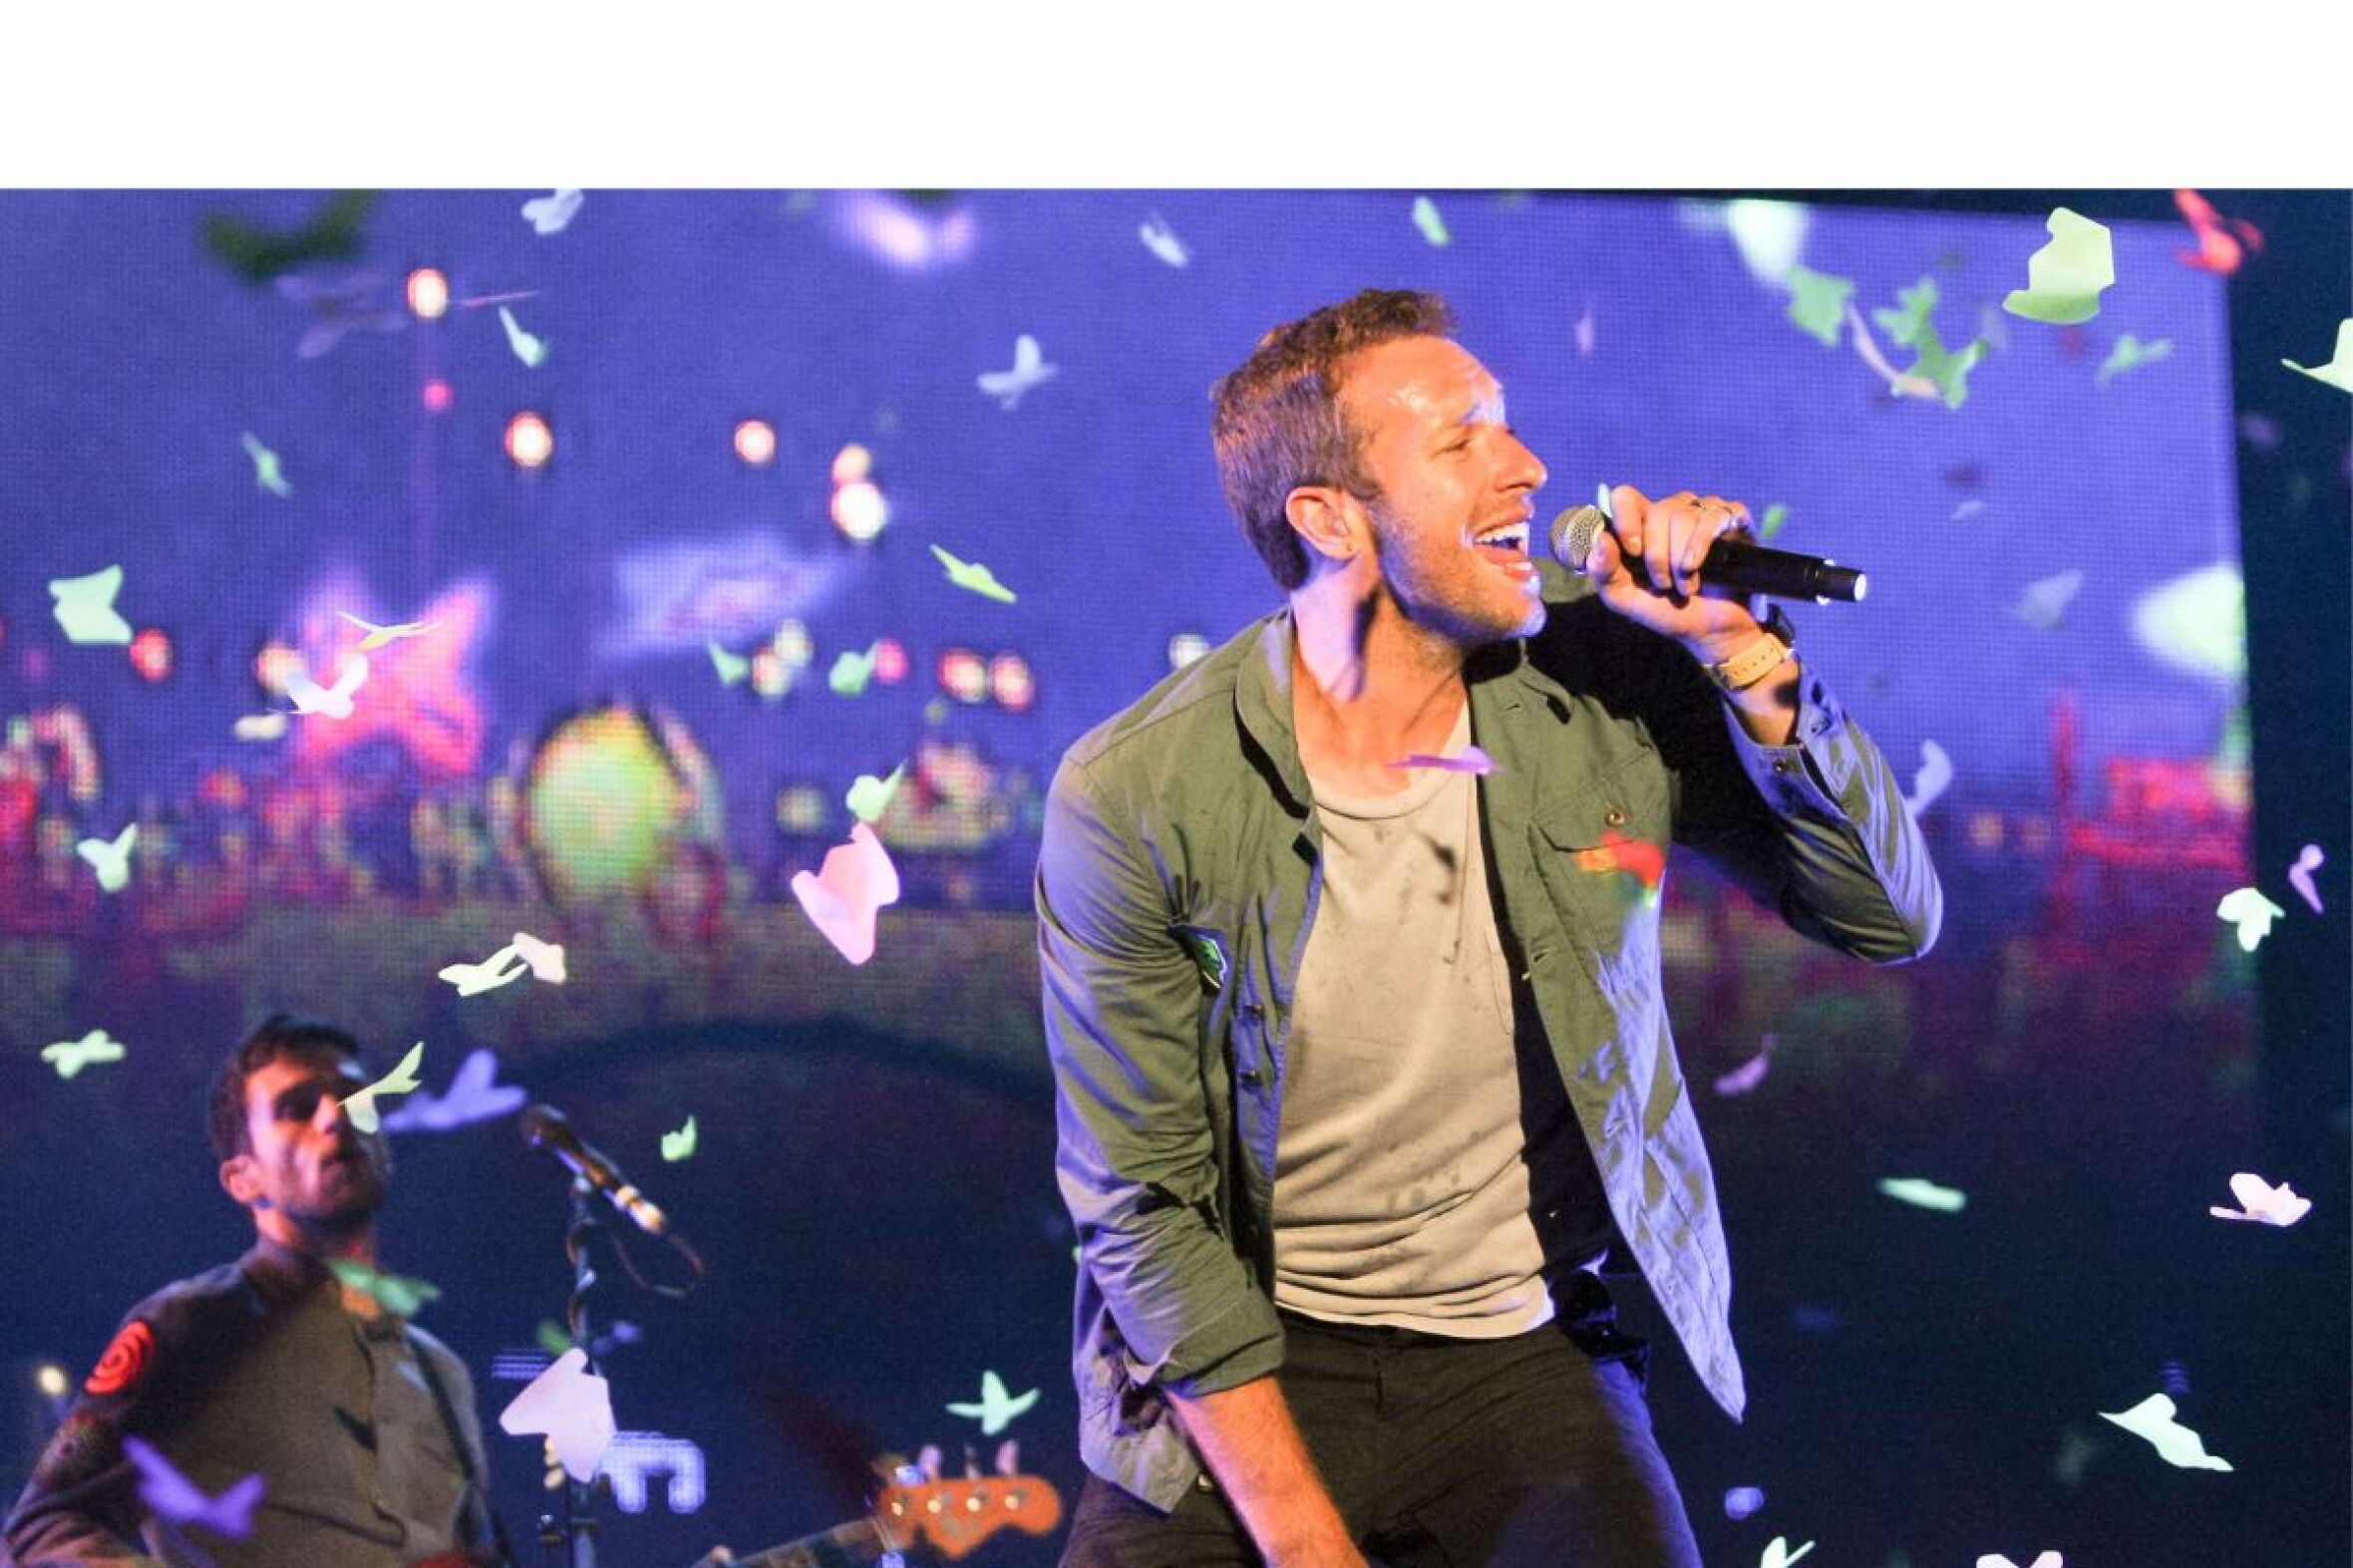 Vai ao concerto dos Coldplay em Coimbra? Saiba onde pode estacionar